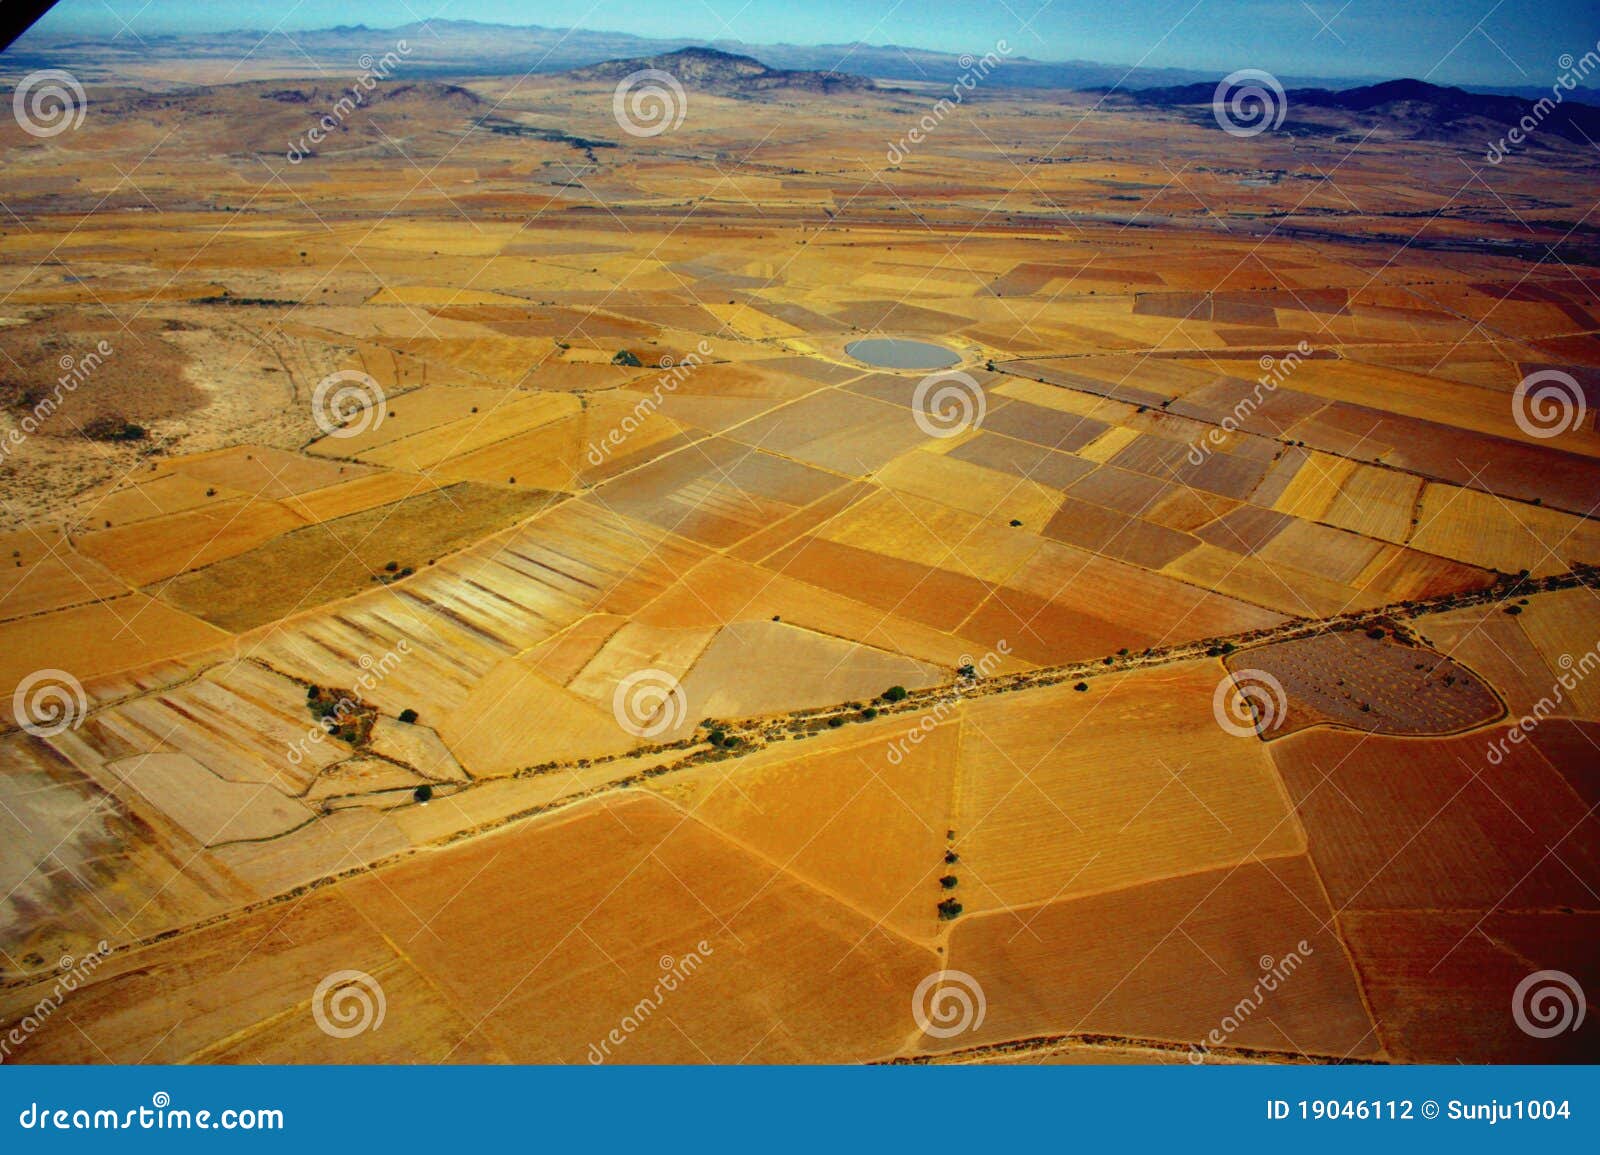 Luftaufnahme des Bauernhofes. Luftaufnahme der Bauernhöfe und der Felder in Mexiko von einem Flugzeug